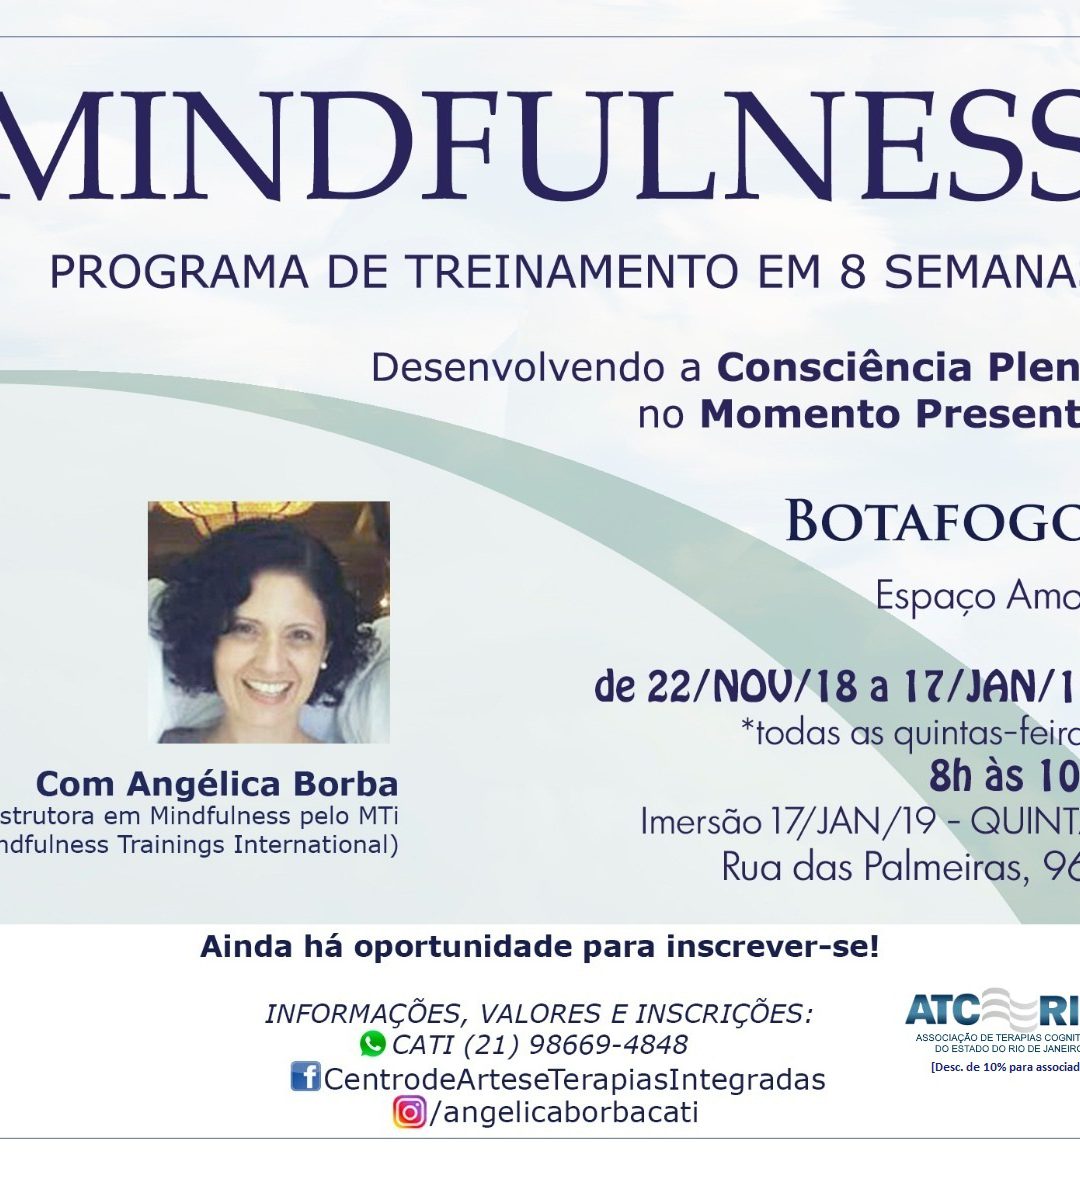 Mindfulness: Programa de Treinamento | 8 semanas